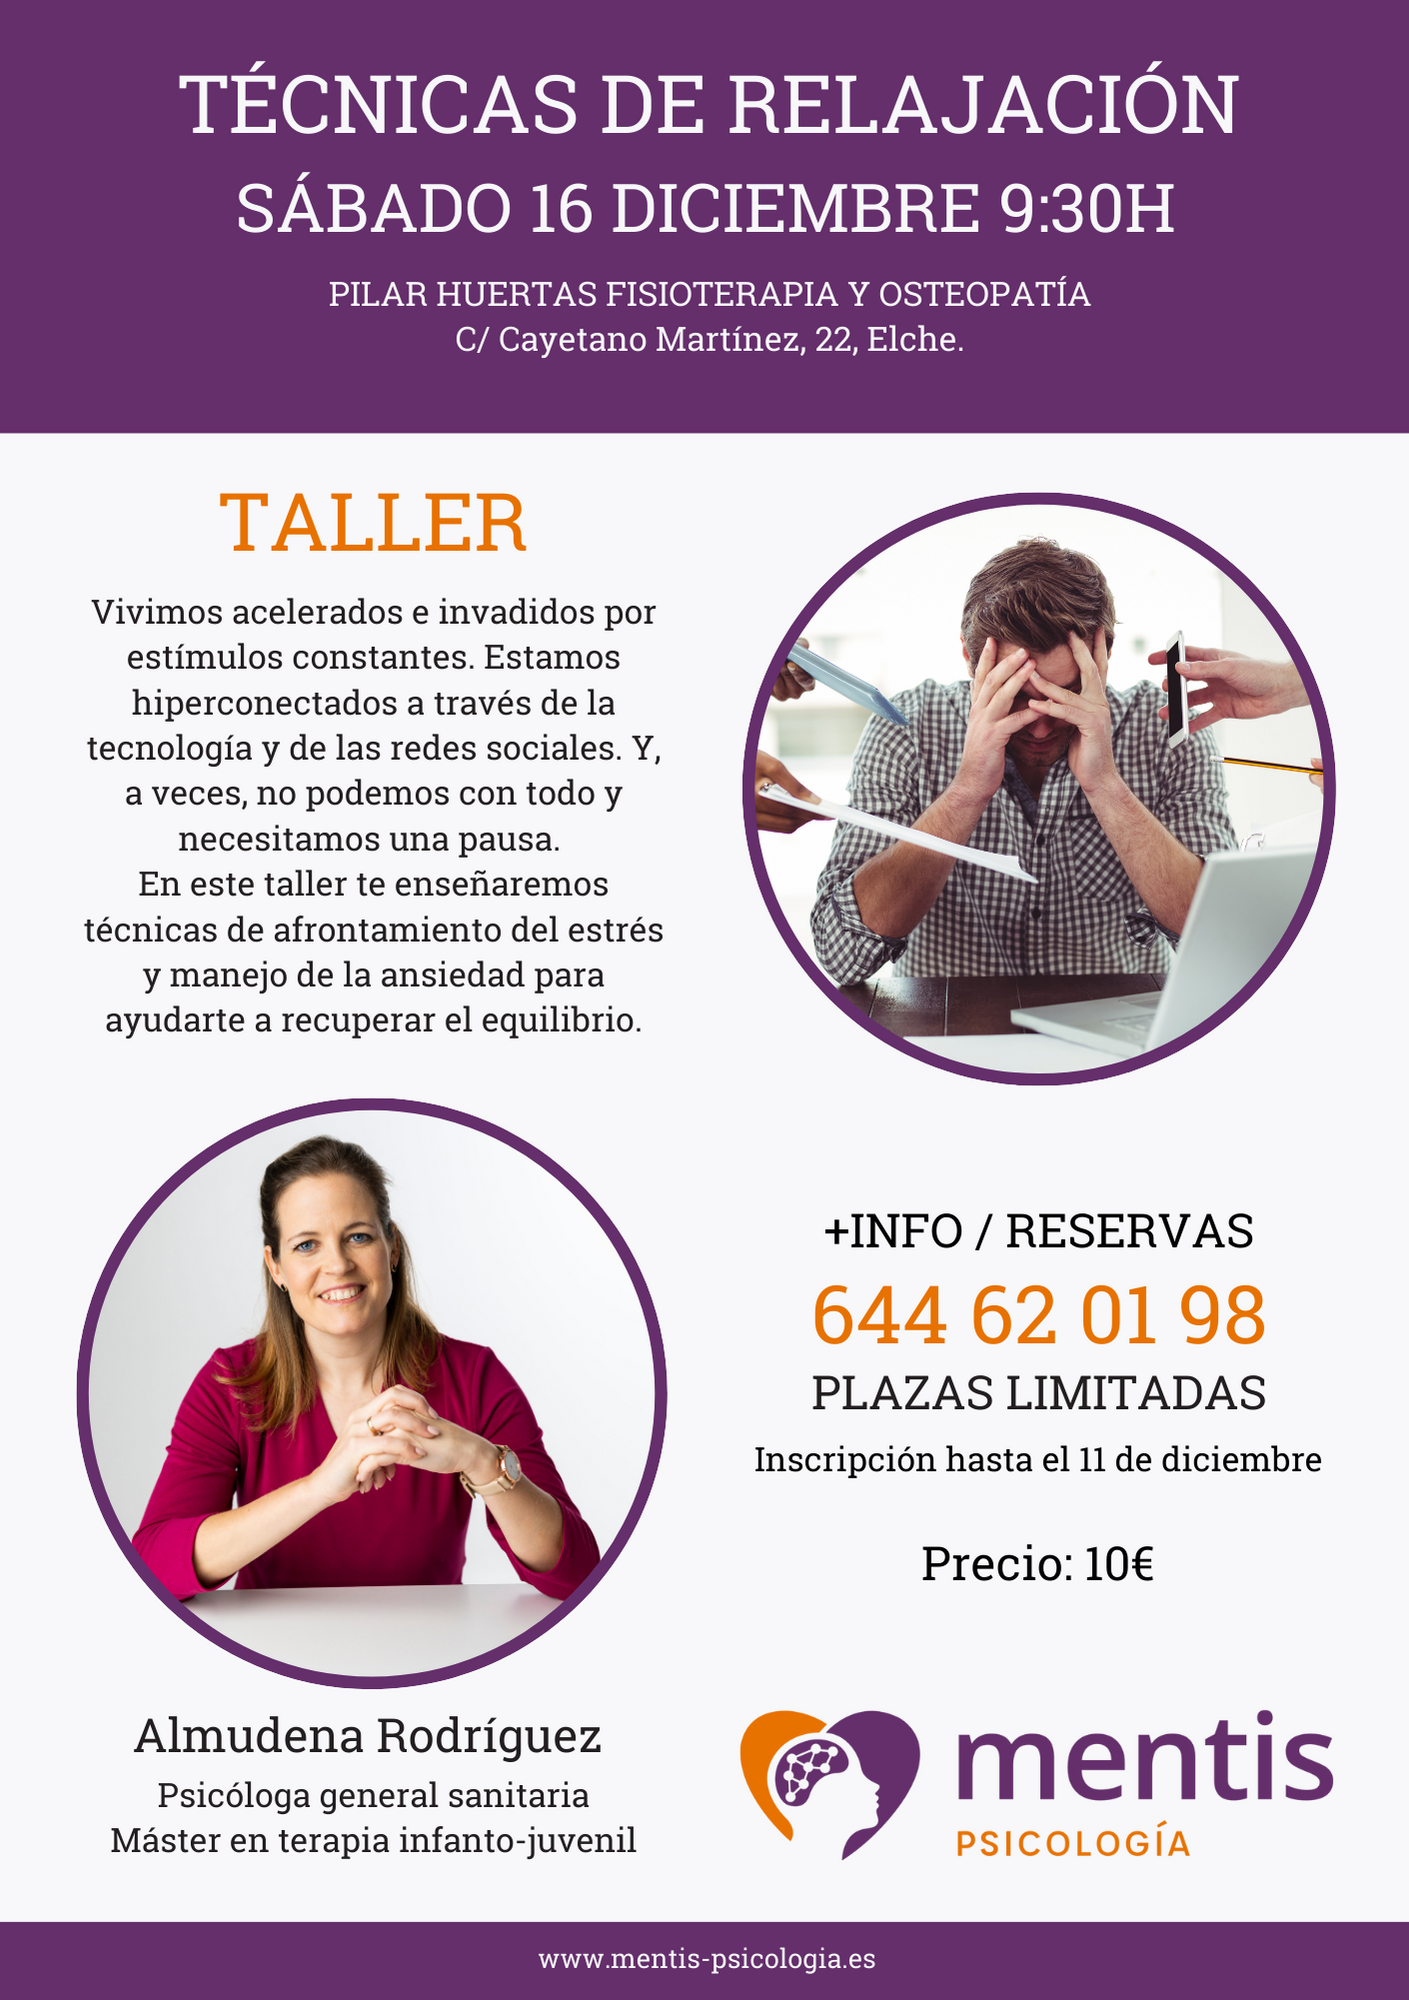 Taller "Técnicas de relajación" - Gabinete Mentis Psicología en Elche, Alicante